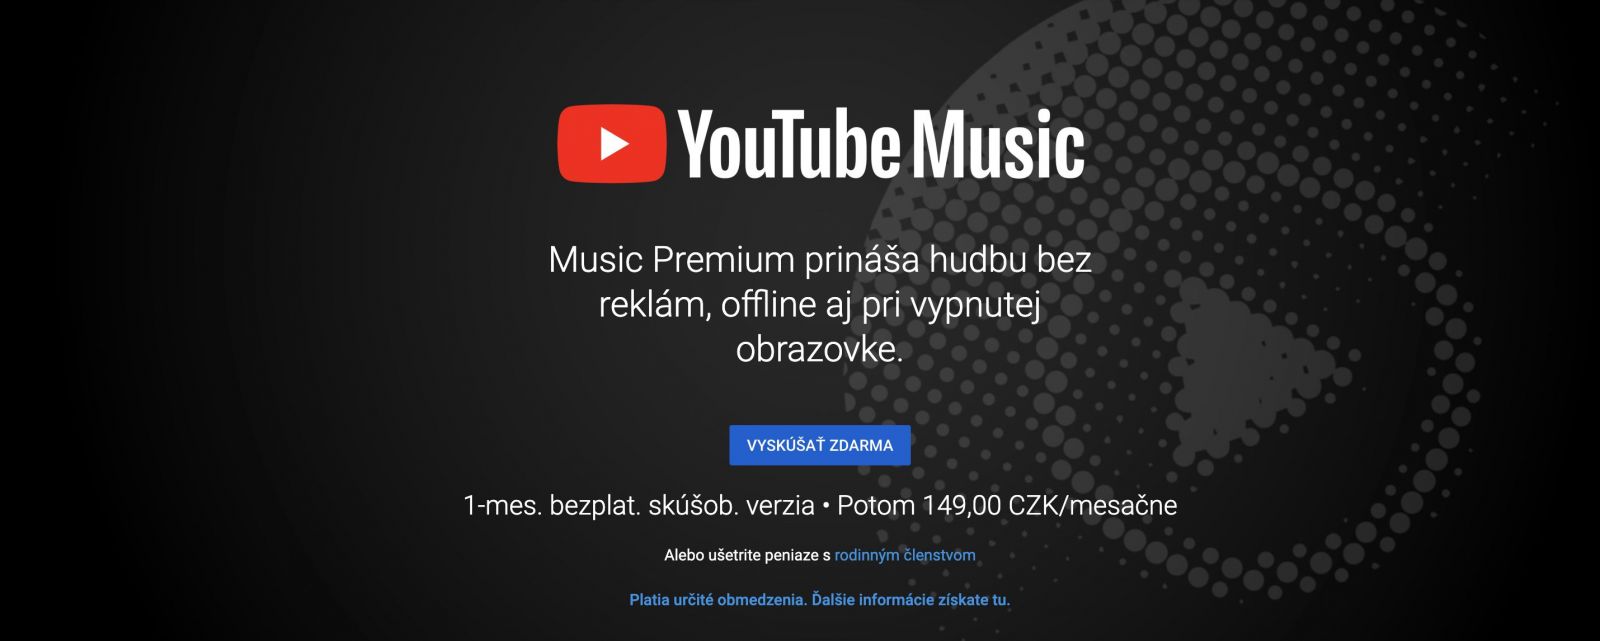 YouTube Music prichádza na Slovensko! Za 6 eur budeš mať prístup k celosvetovej knižnici, vyskúšať ho môžeš na mesiac zadarmo